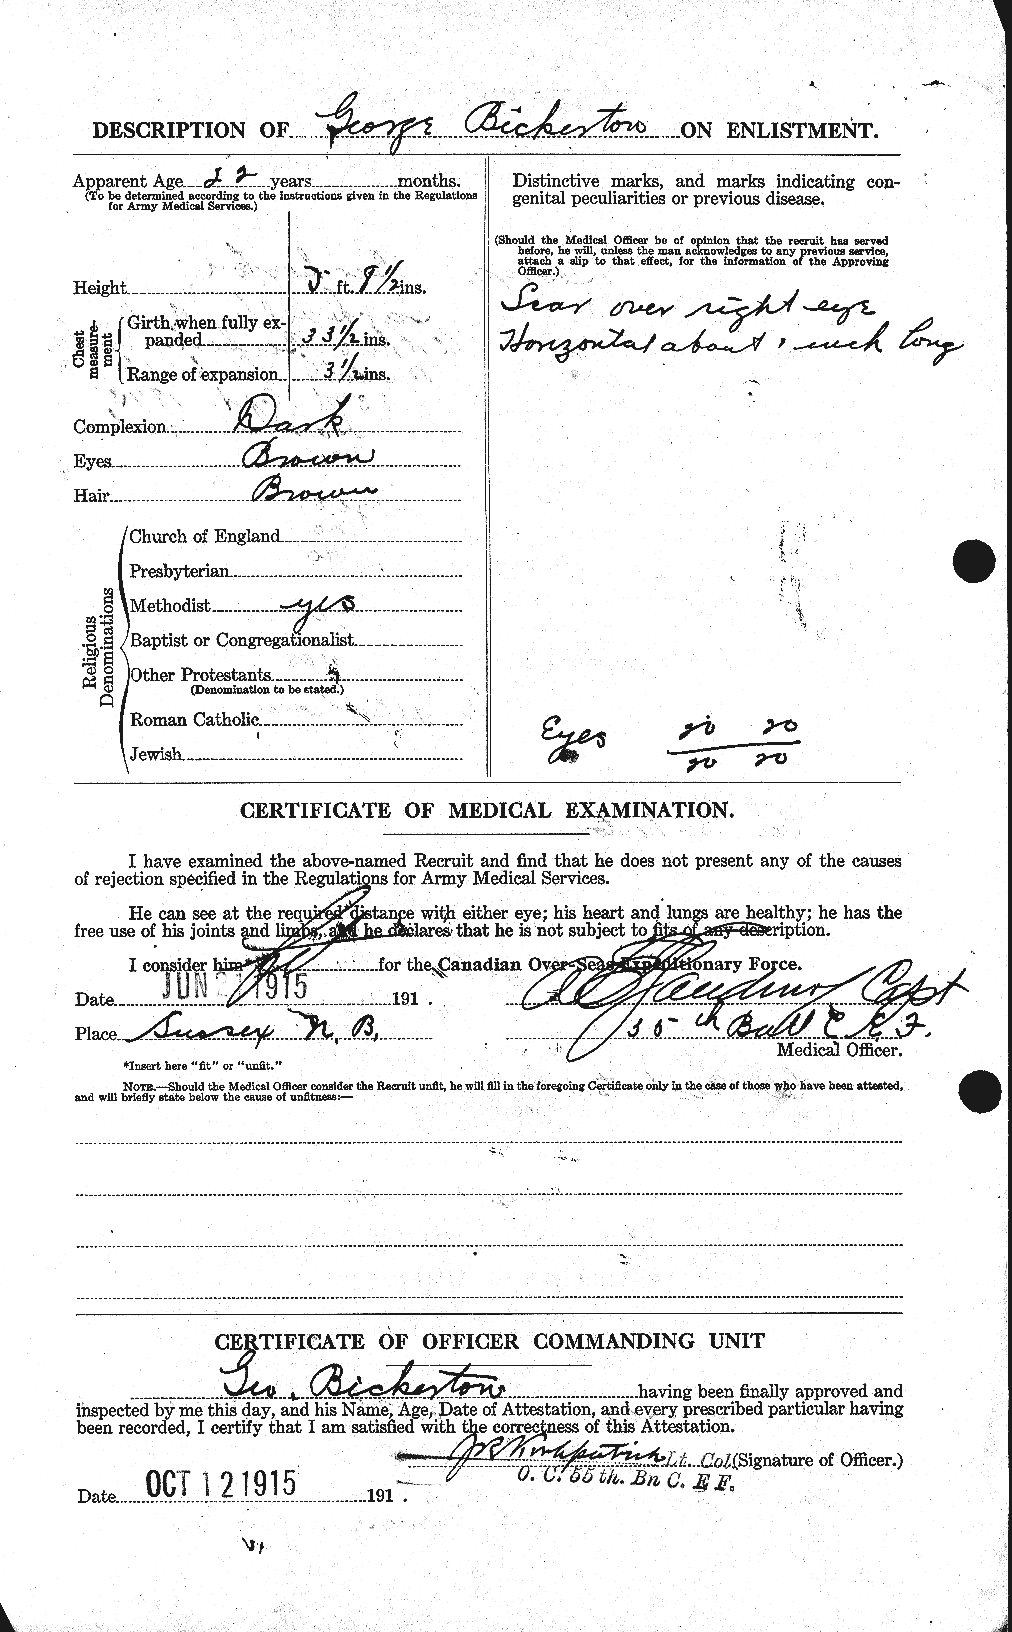 Dossiers du Personnel de la Première Guerre mondiale - CEC 244935b